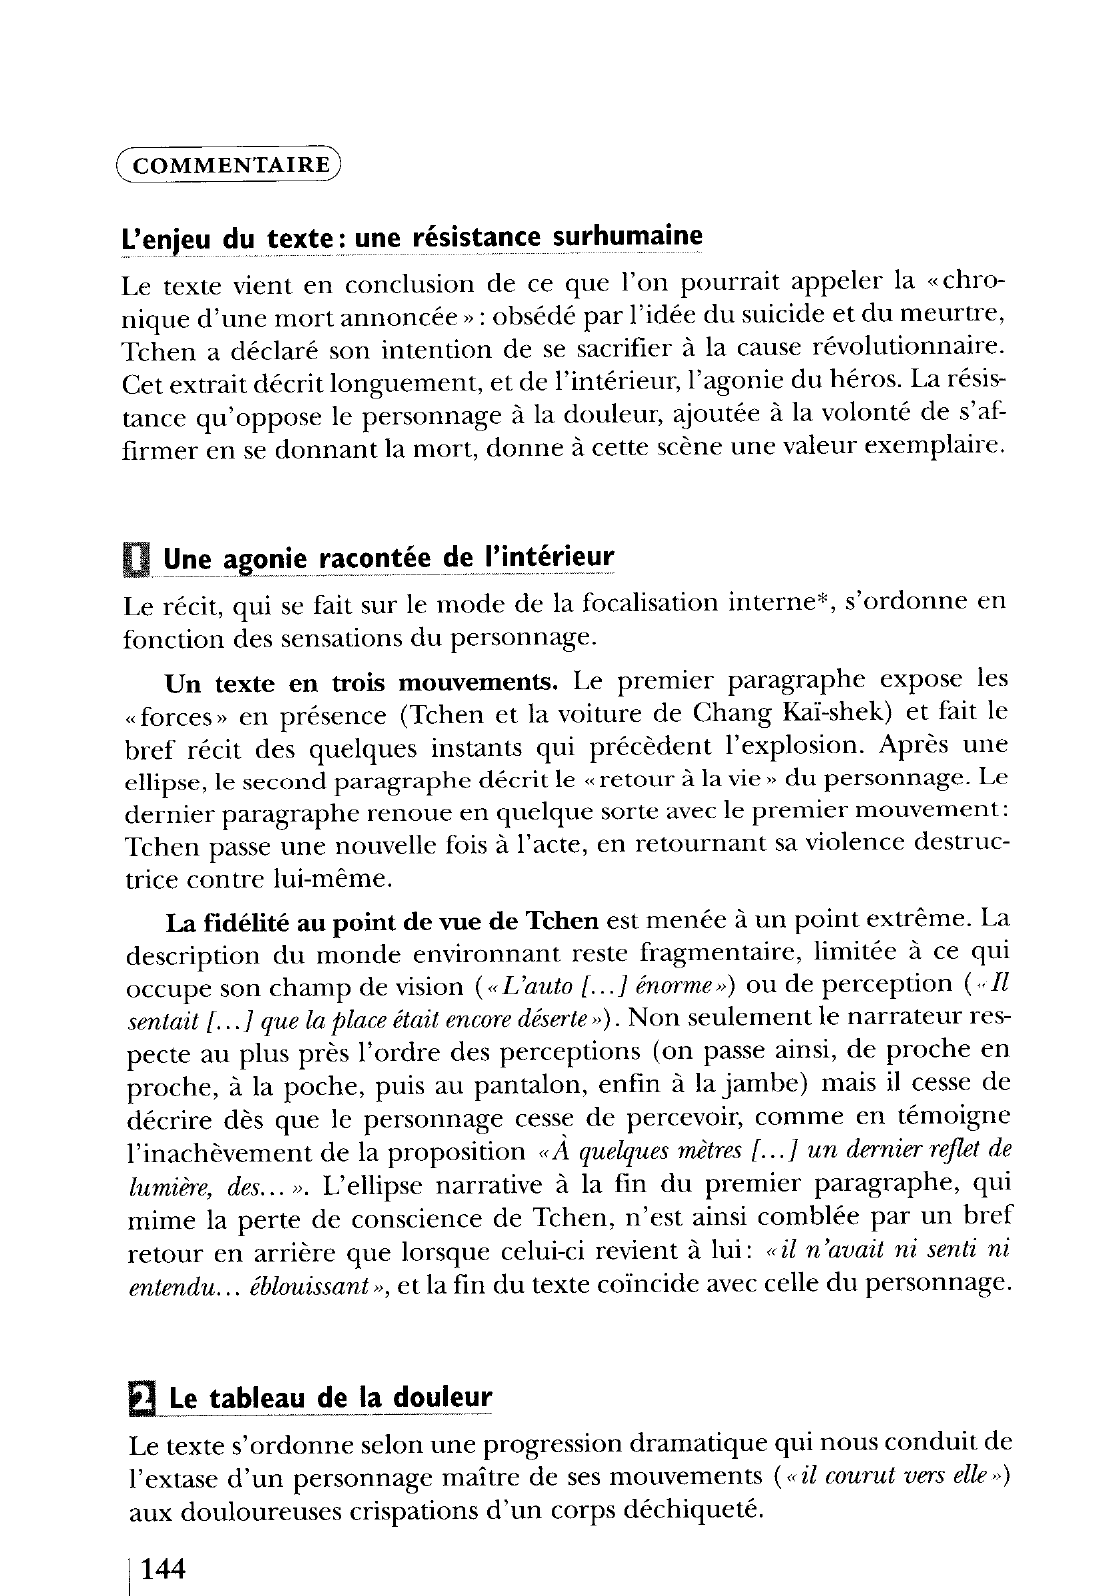 Prévisualisation du document La Condition humaine, IV, «11 avril », Folio (Gallimard), pp. 235-236. Malraux (commentaire composé)